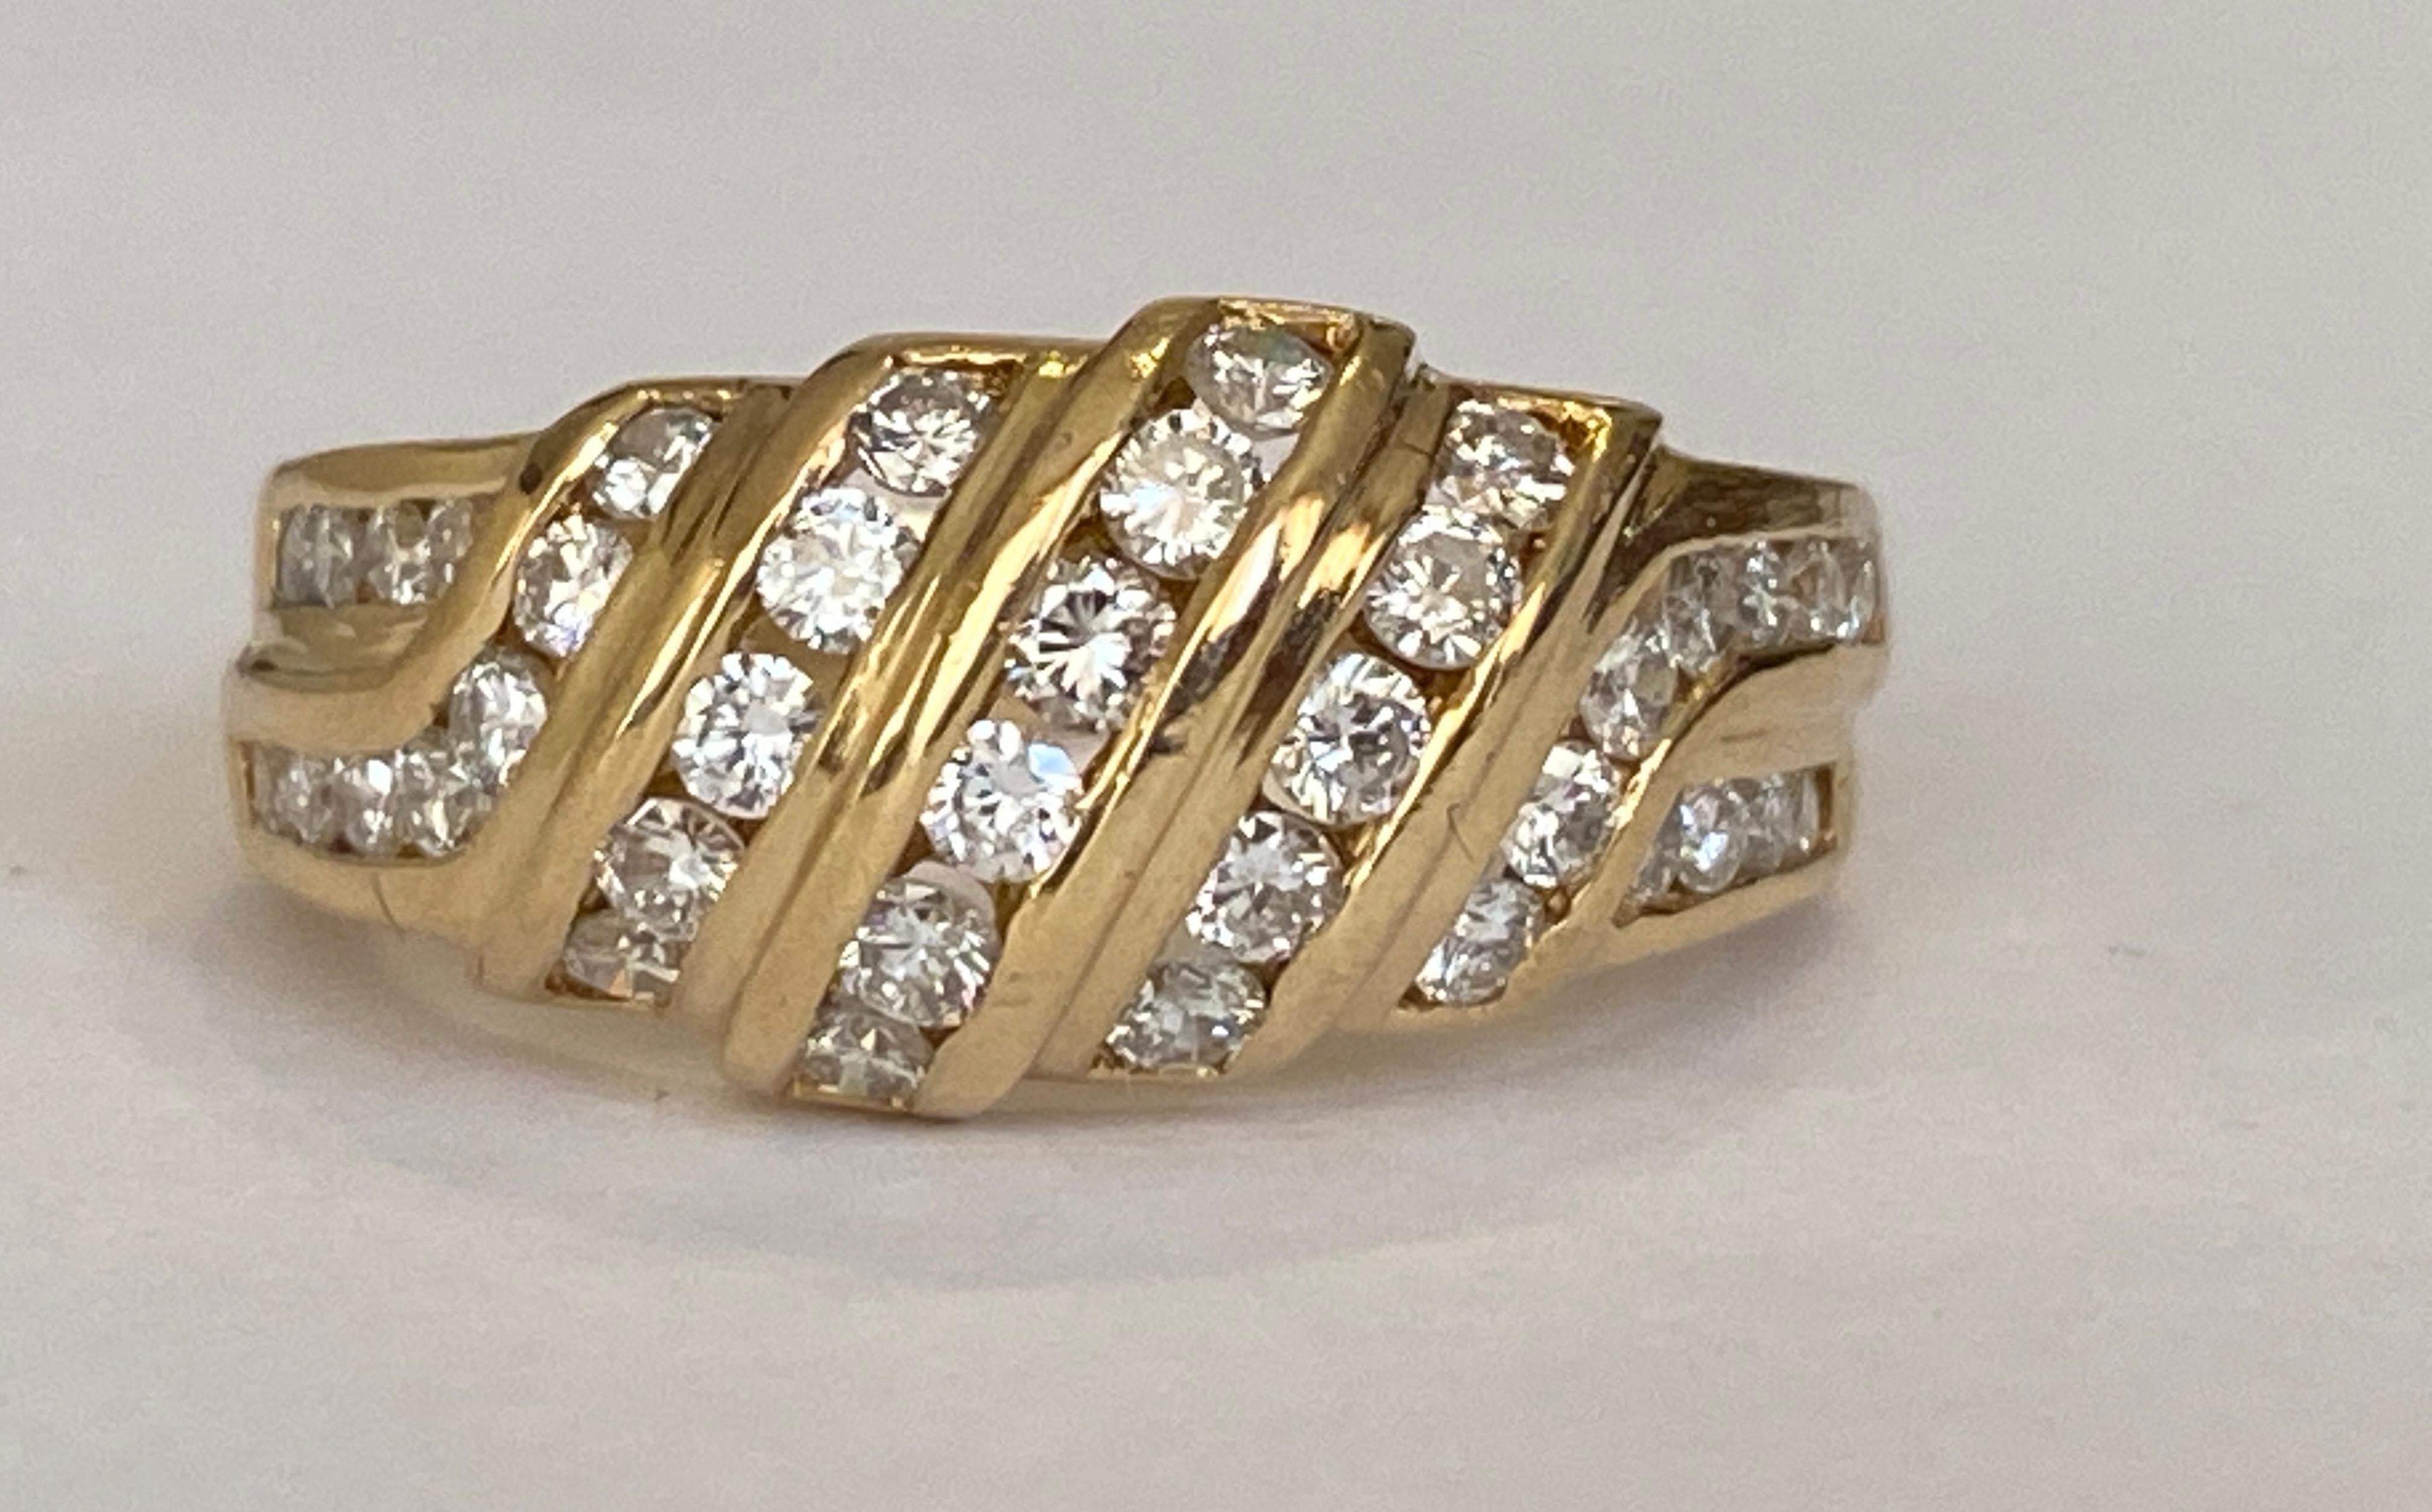 Offert Belle bague vintage en or jaune 18k et diamants fabriquée à Paris France par la maison de joaillerie Chaumet. La bague est sertie de 38 diamants ronds de taille brillant, d'environ 0,90 carat, de qualité F/VS. La bague est estampillée CHAUMET